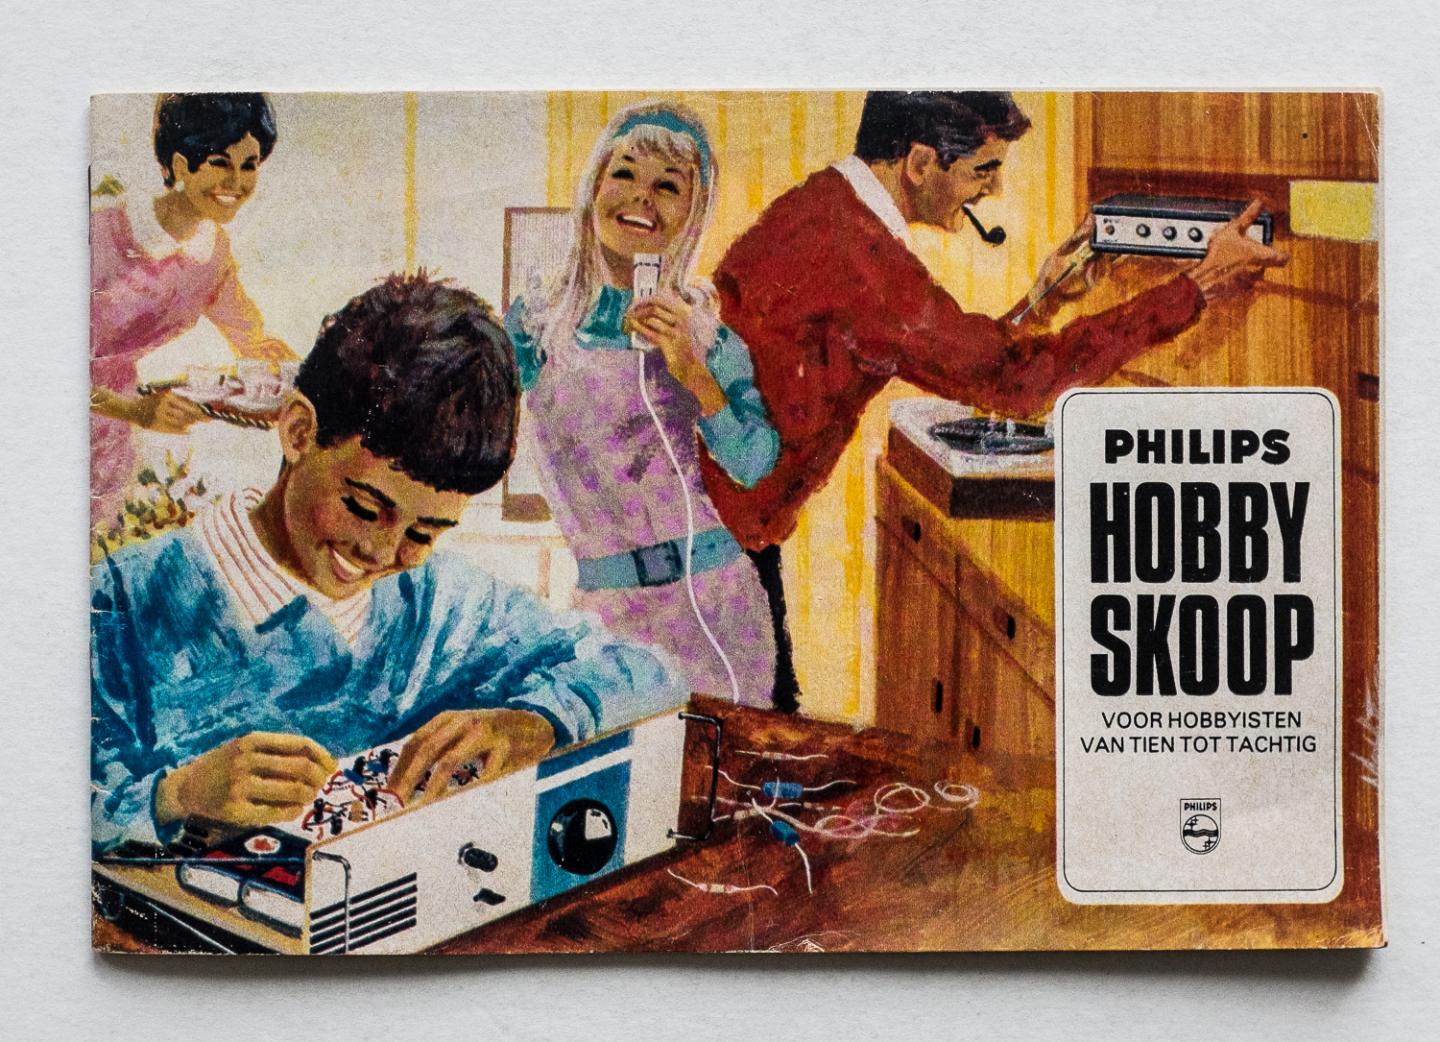  - Philips  Hobby Skoop - voor hobbyisten van tien to tachtig